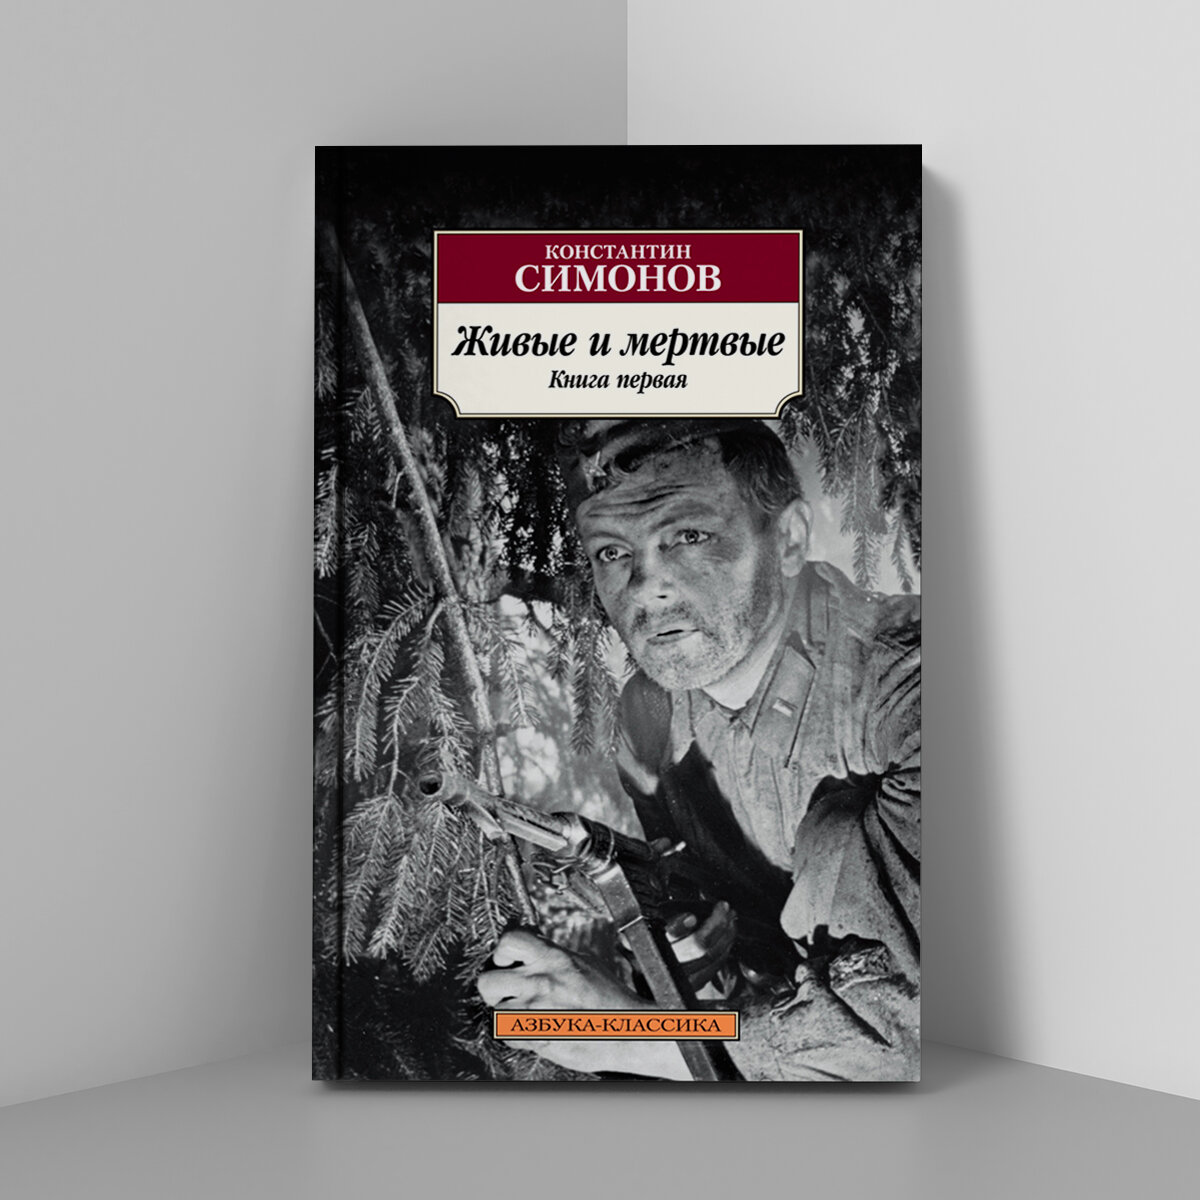 «Читаем книги о войне»: обзор литературы о Великой Отечественной войне